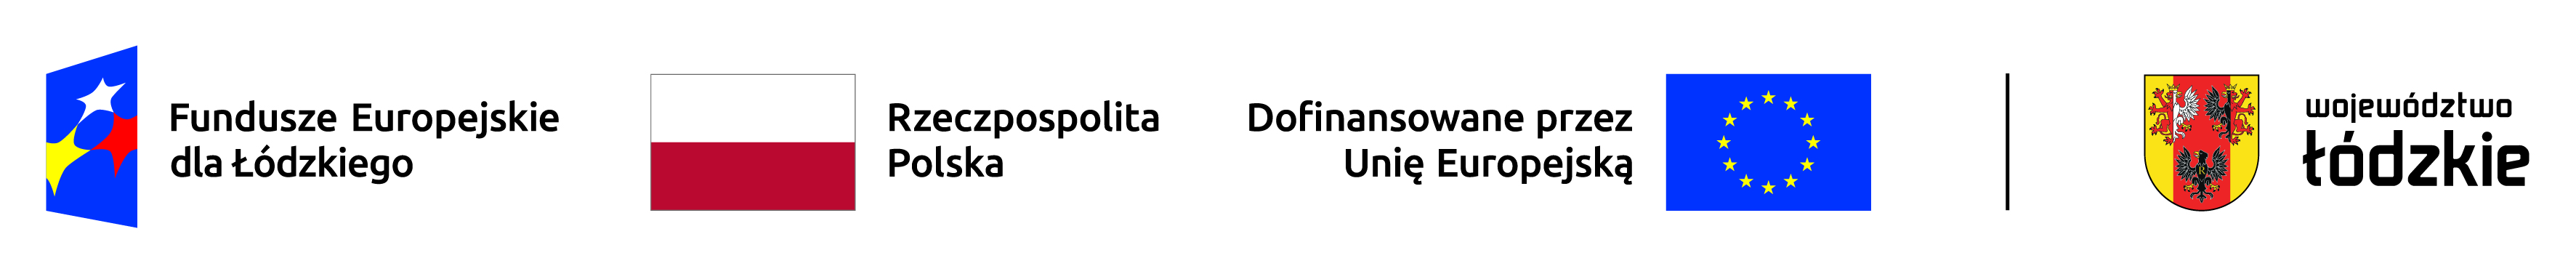 logo Fundusze Europejskie dla Łódzkiego